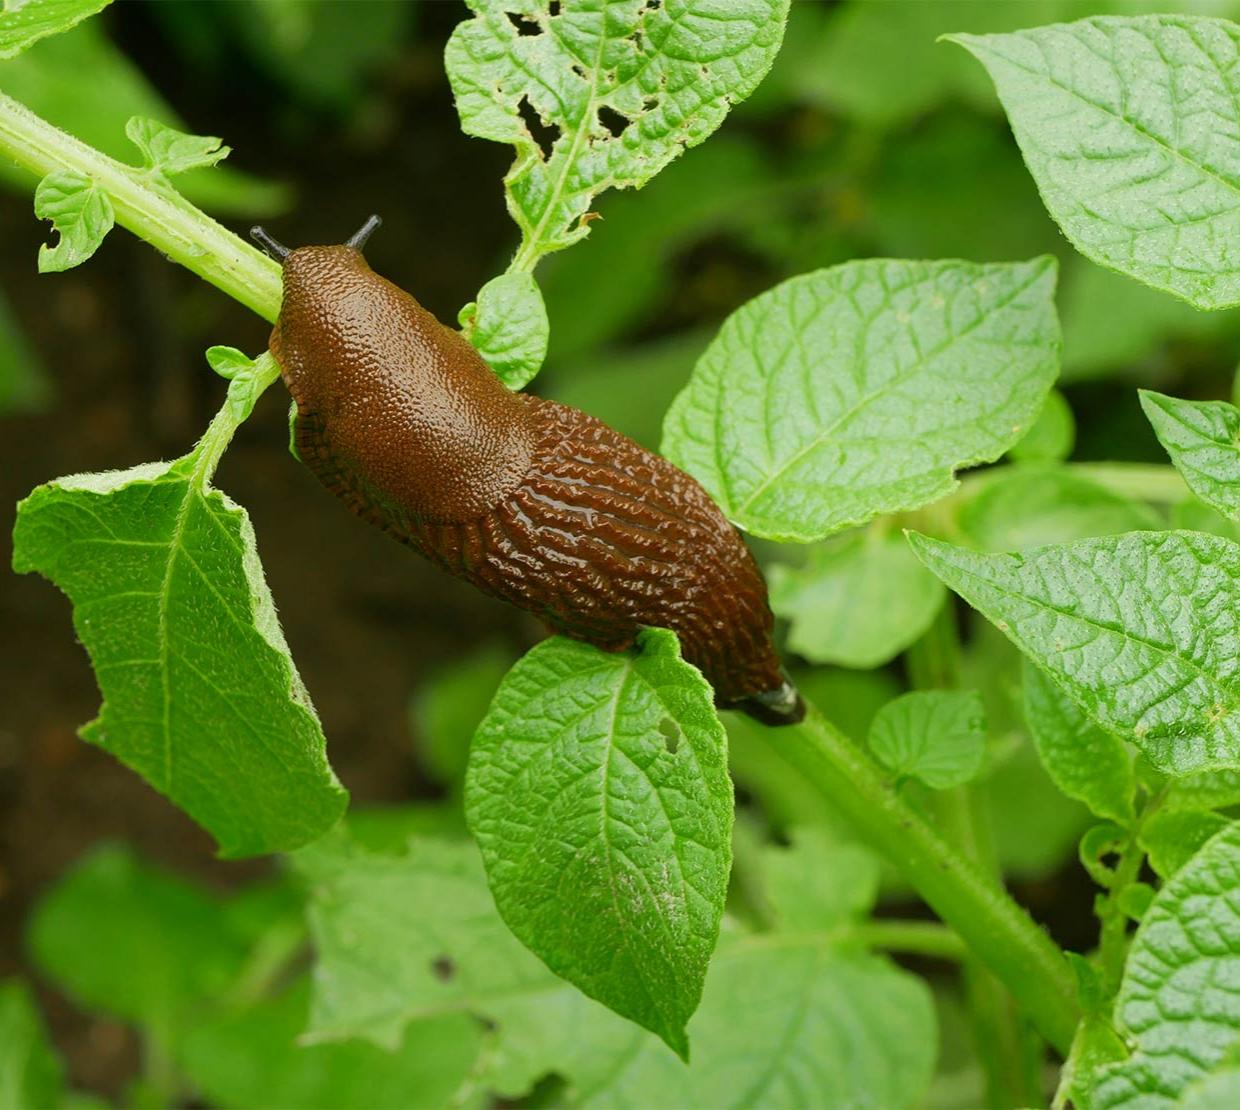 Invasive slug